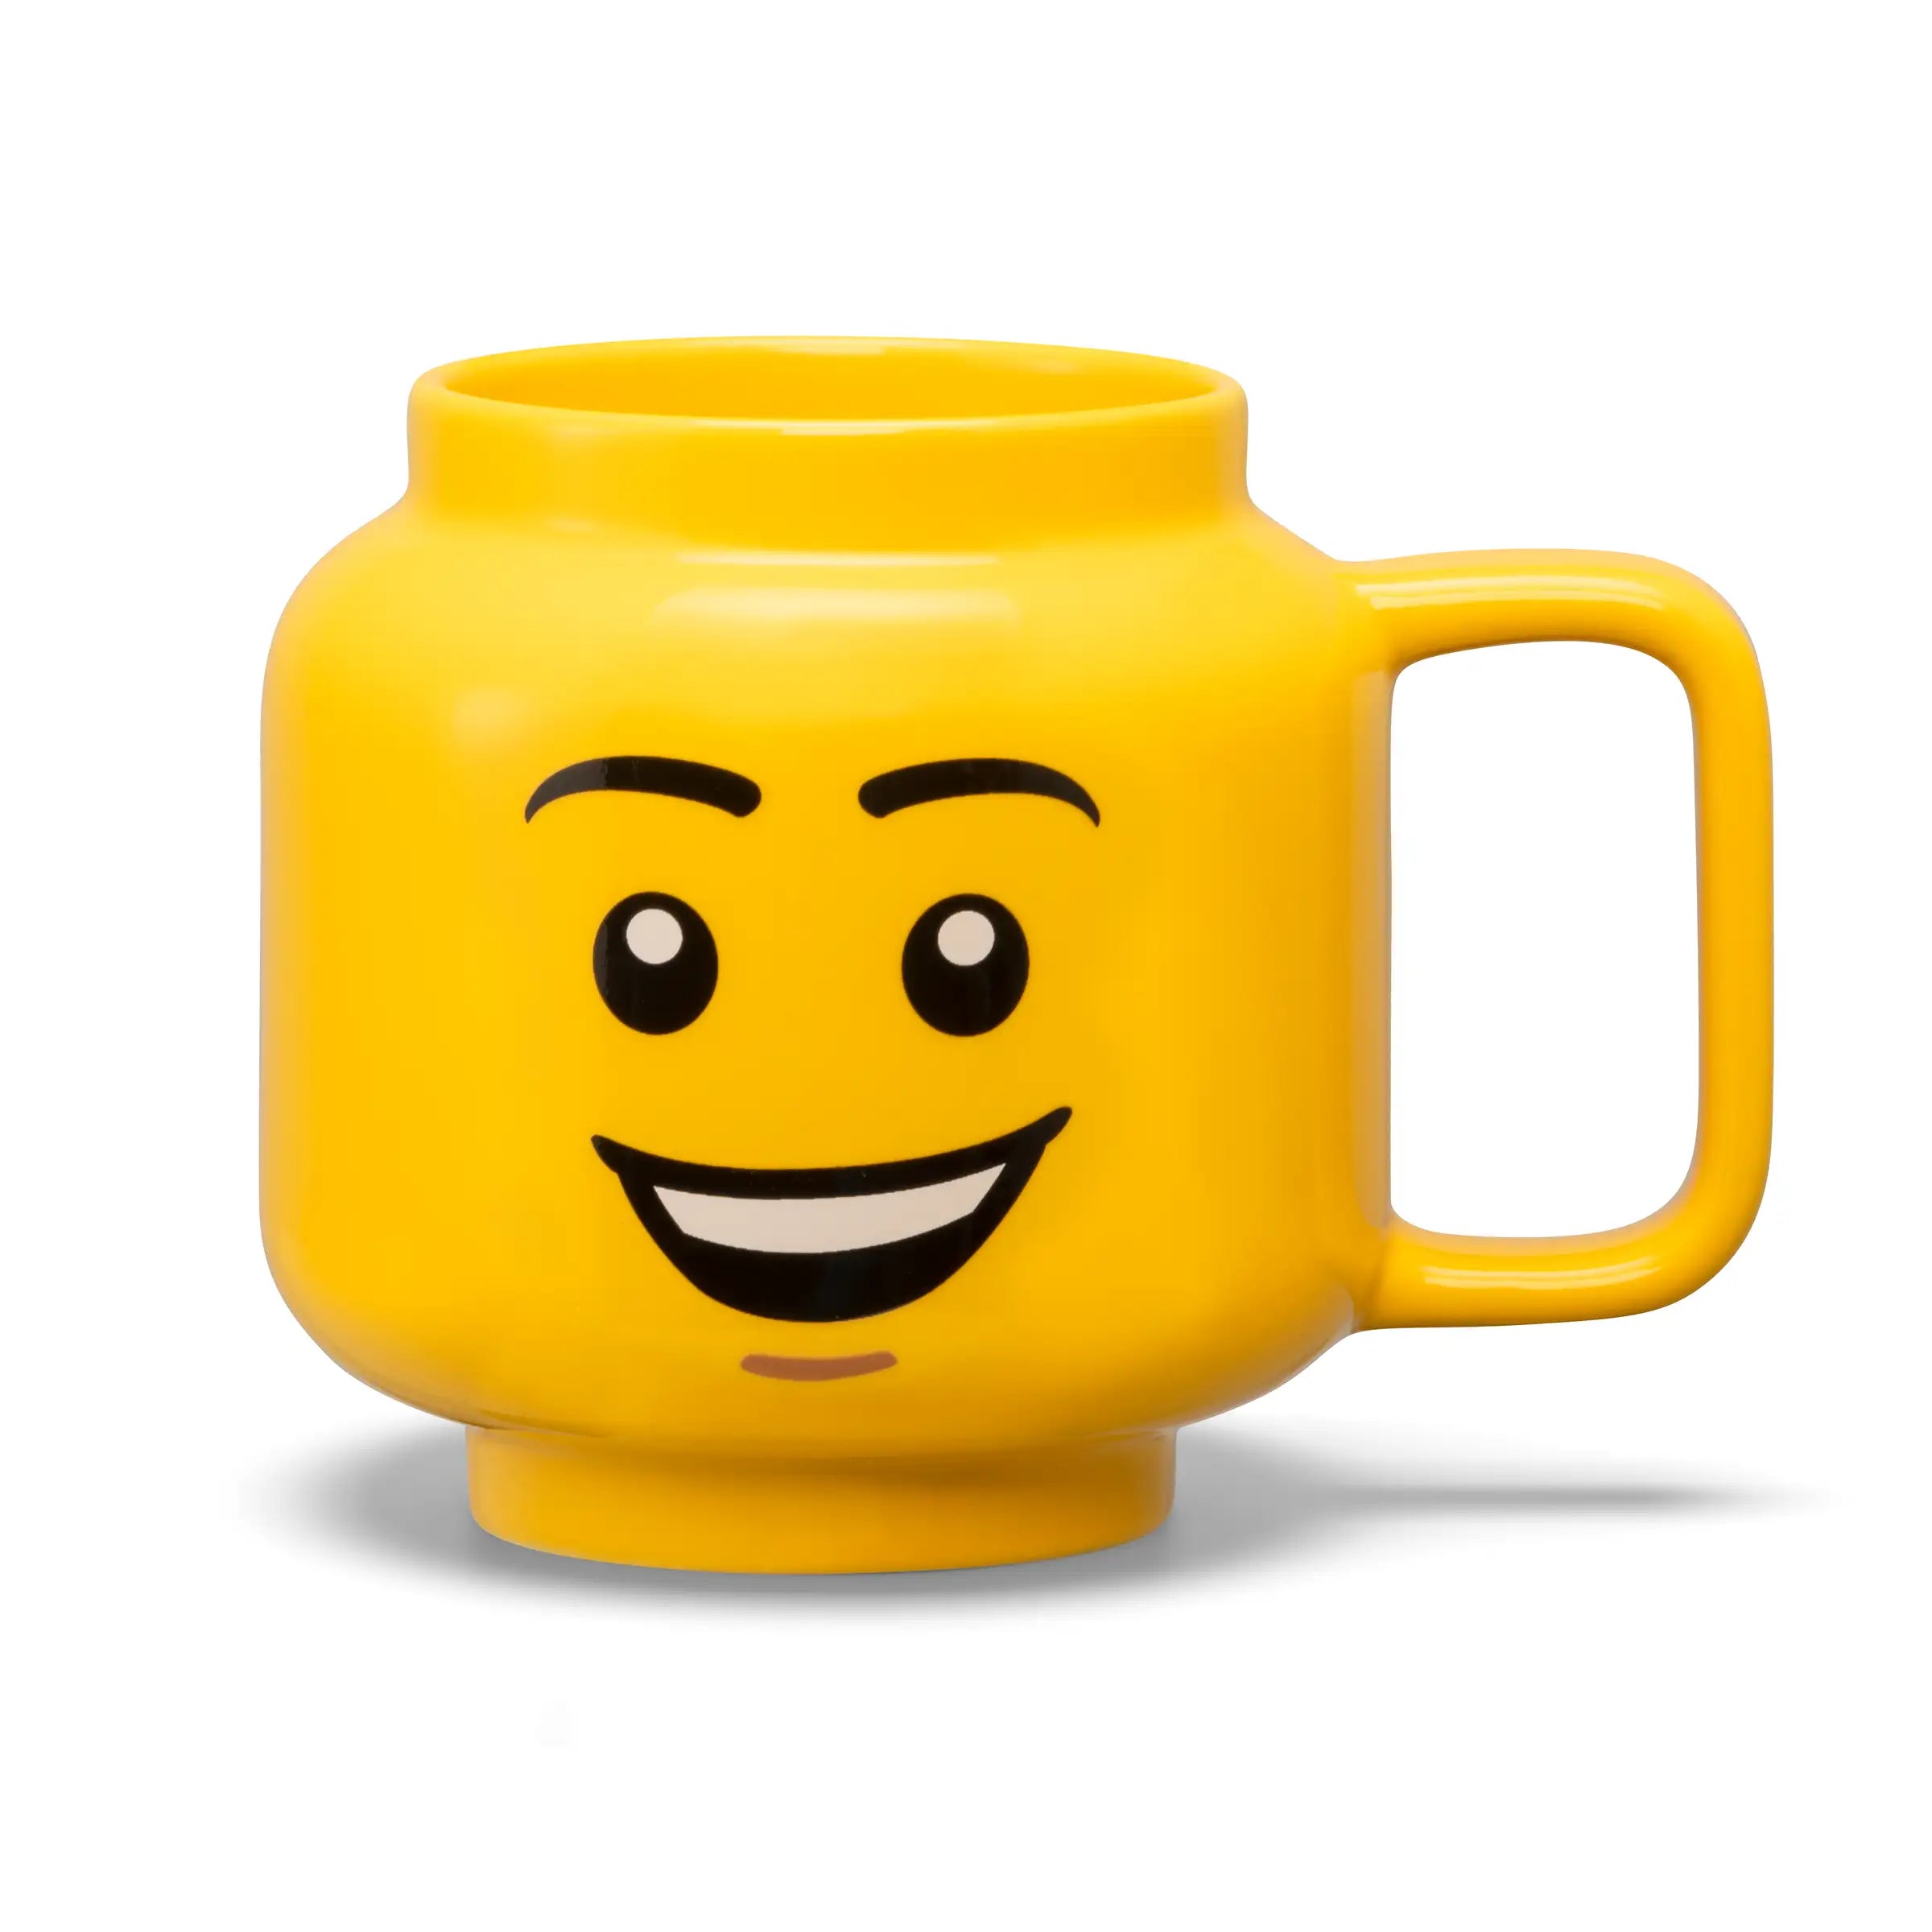 LEGO - taza de cerámica Happy Boy Grande